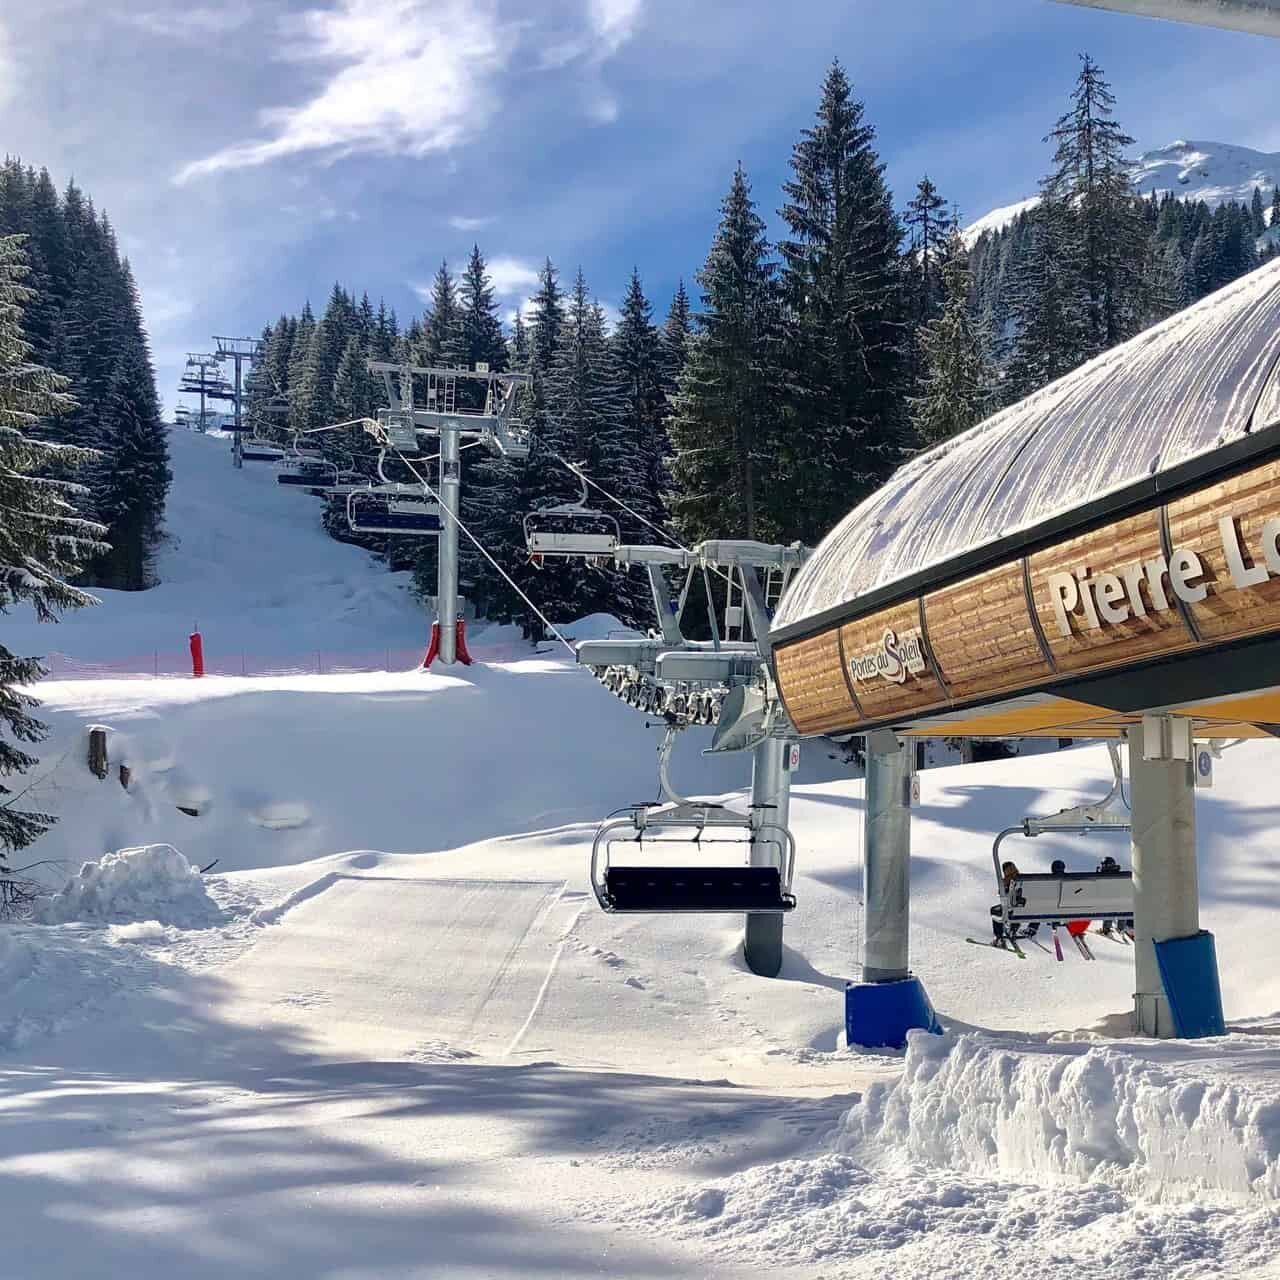 The Pre-la-Joux ski lift in Chatel